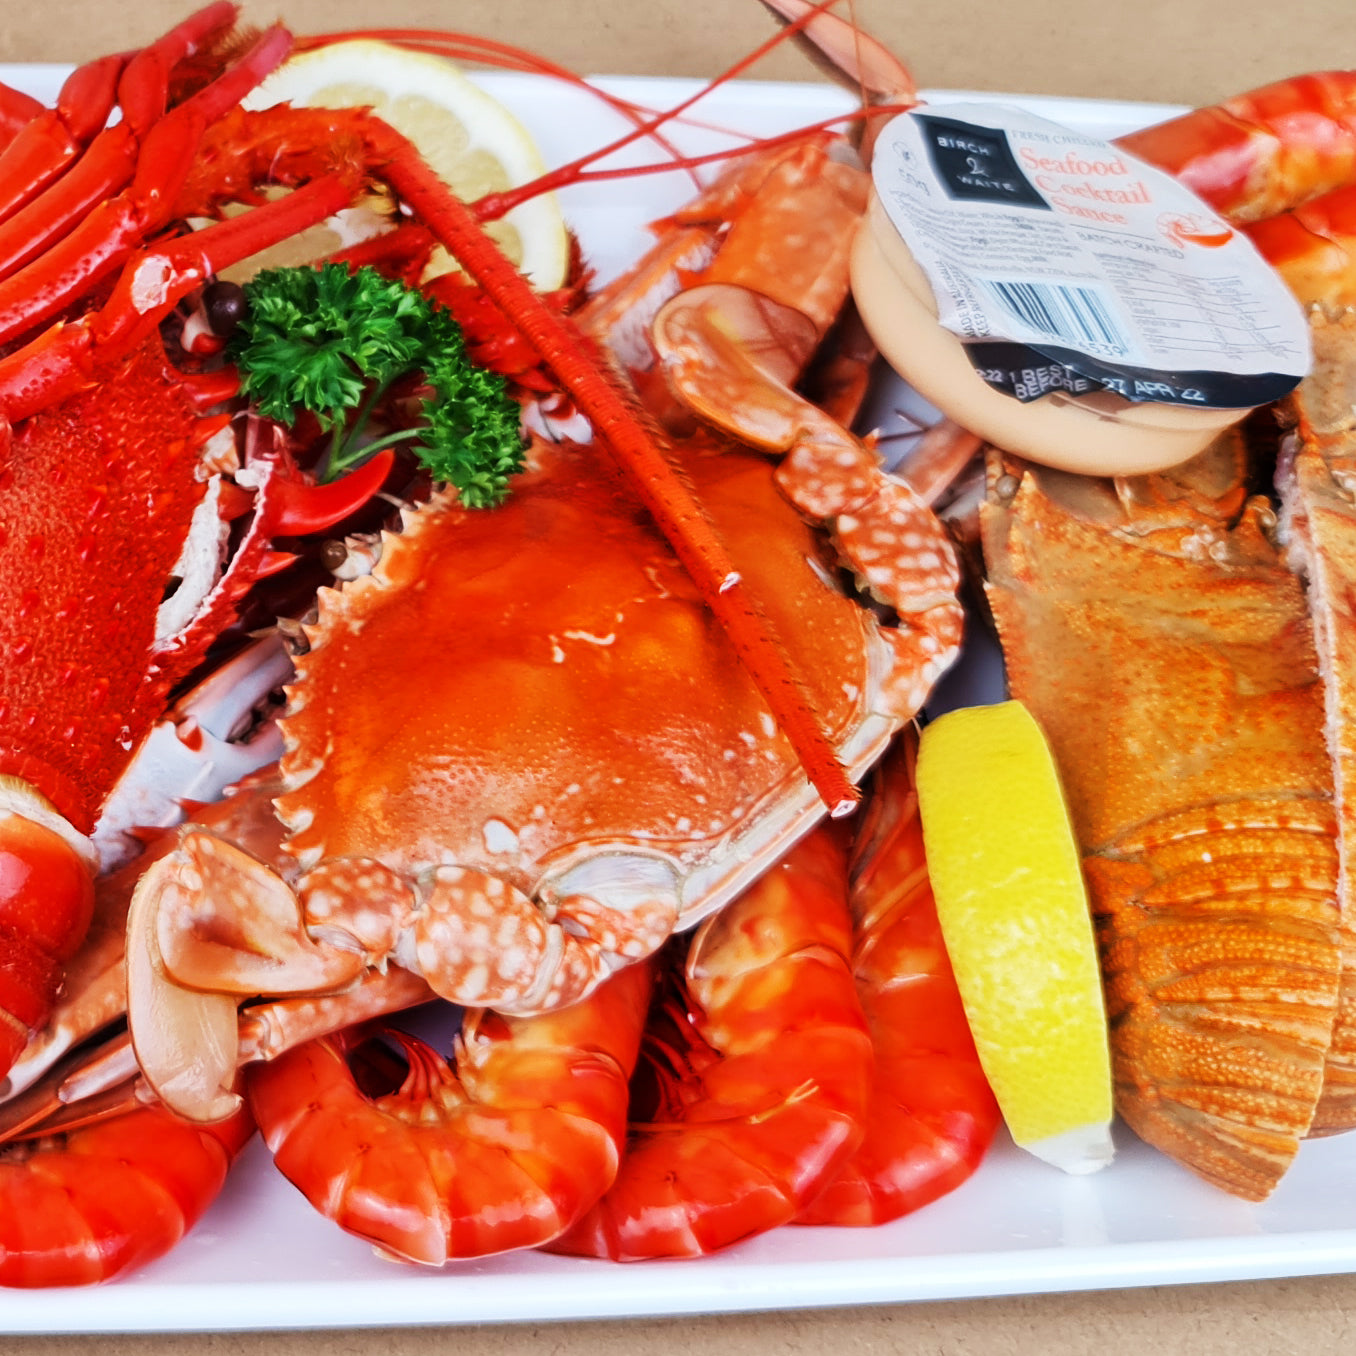 Premium Crustacean Platter